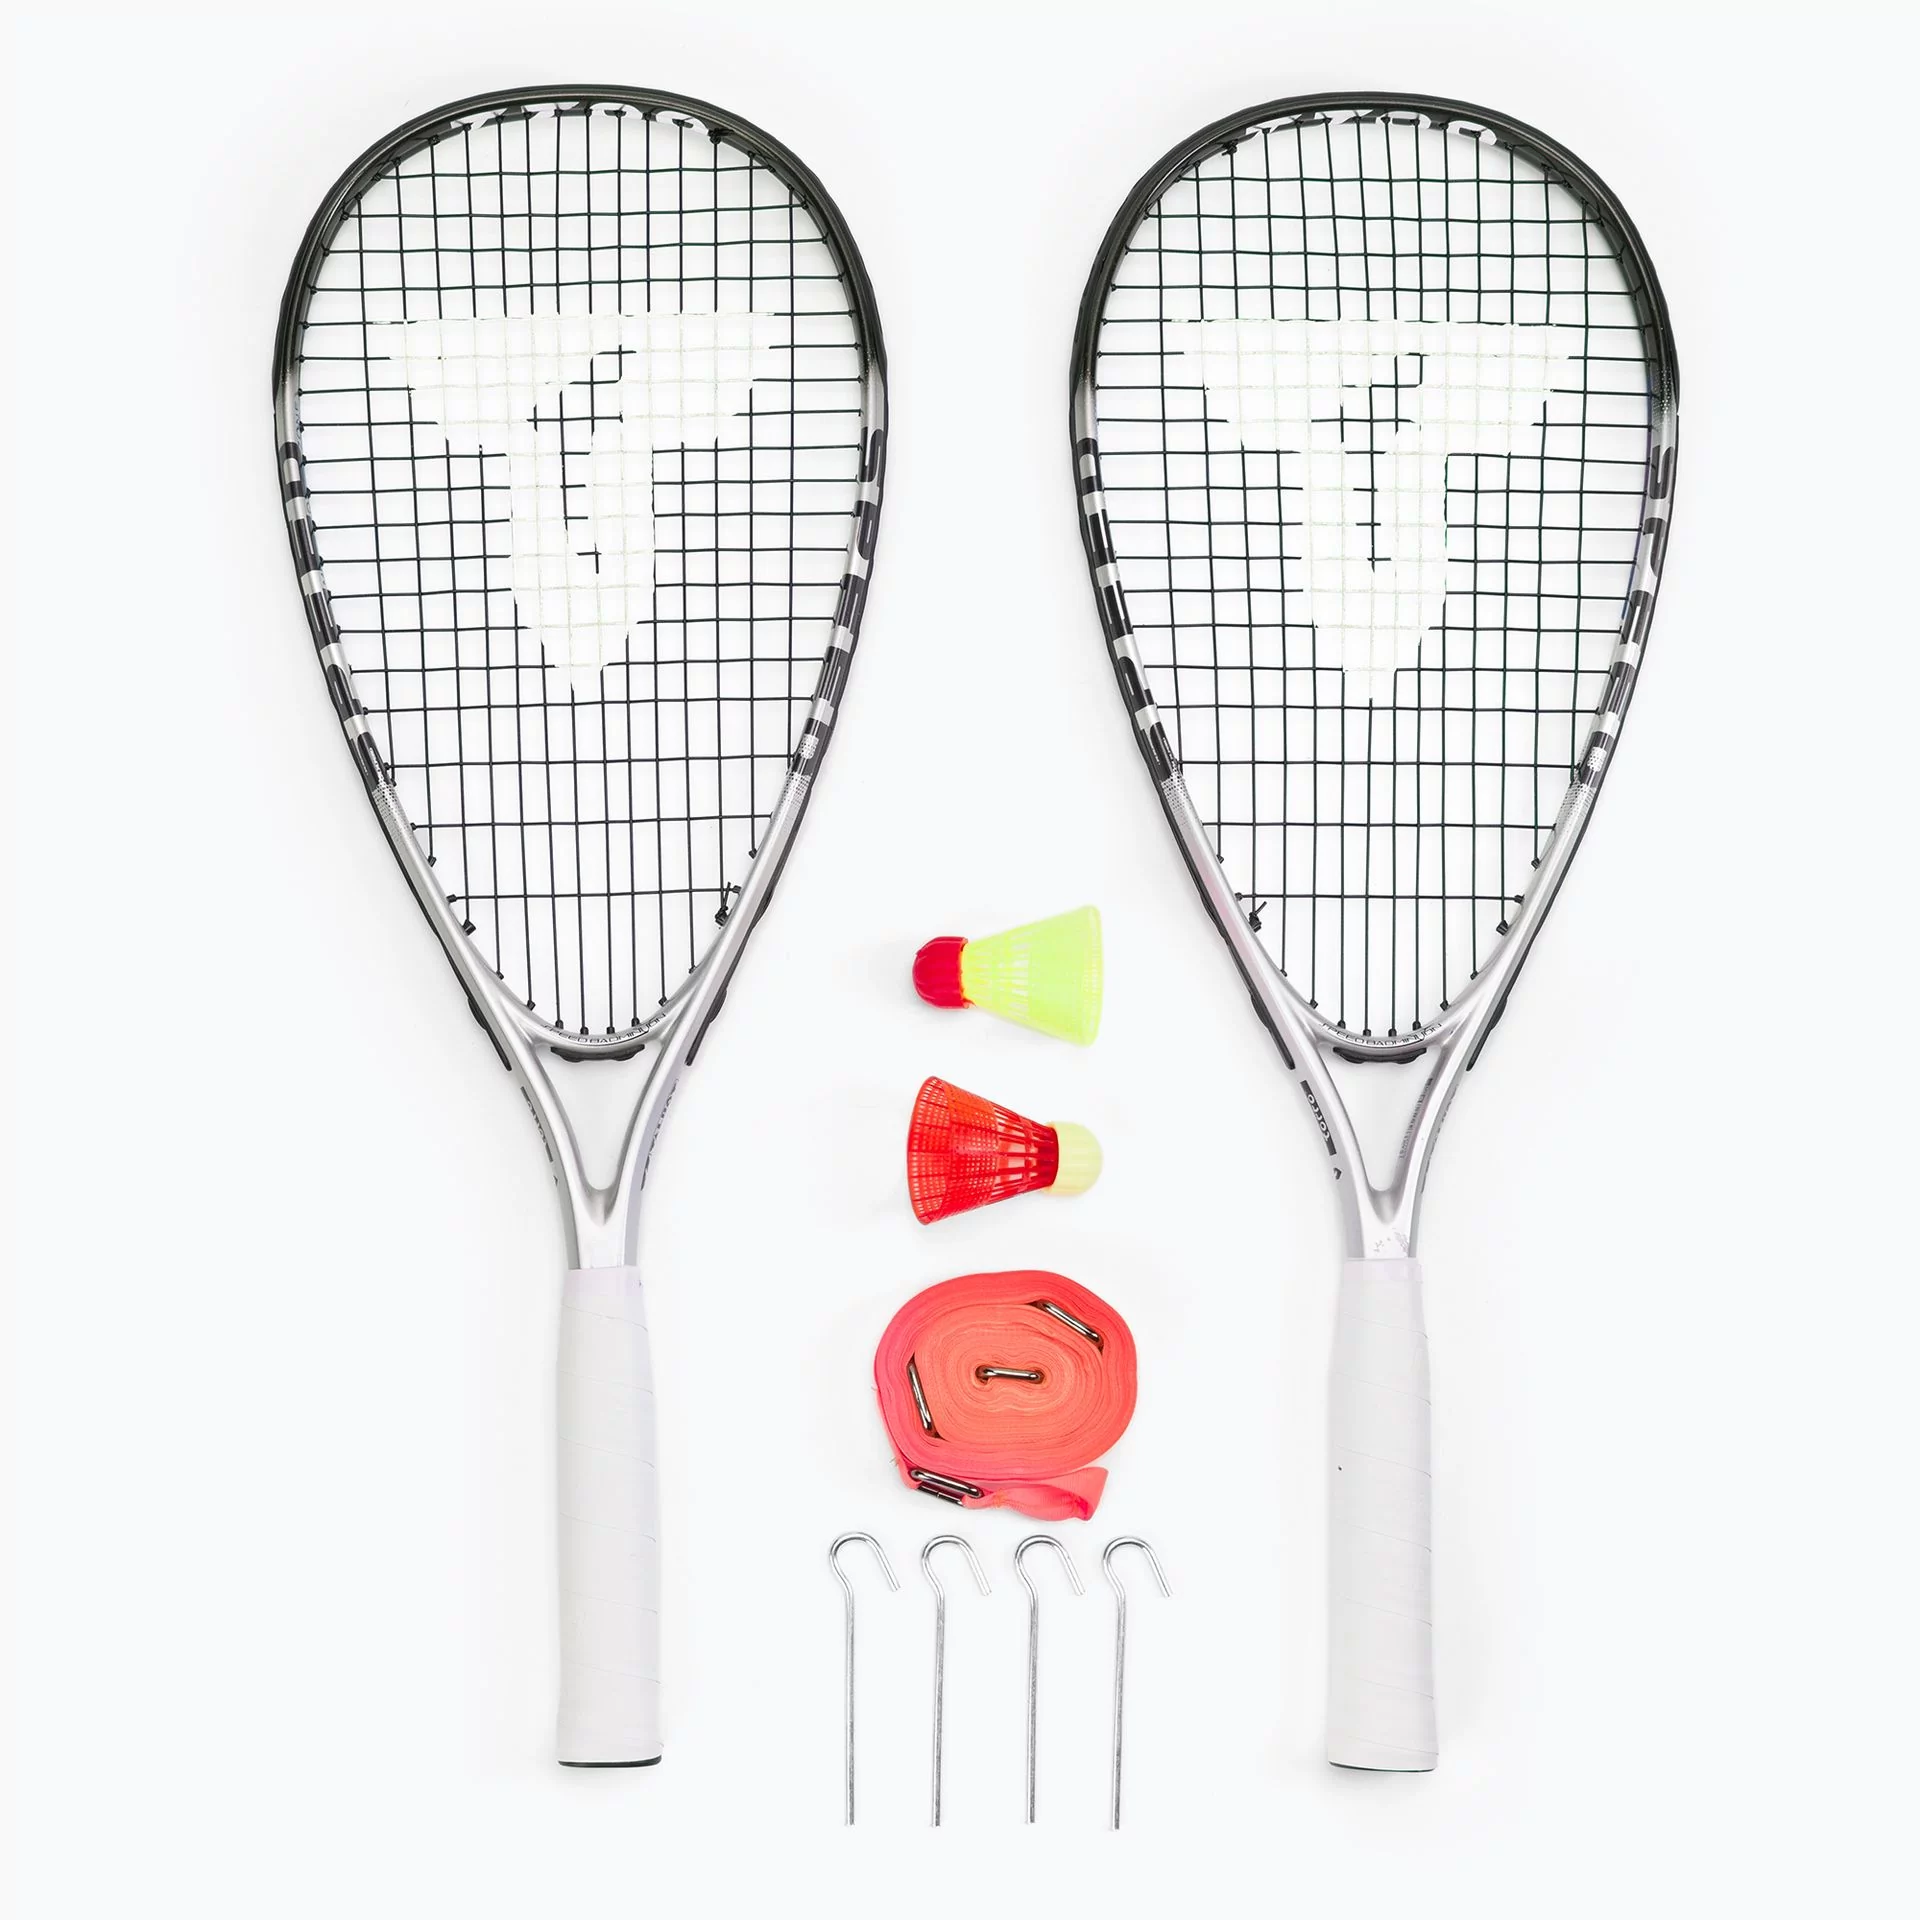 2 Badminton Speed zestaw, rackets 5 7700, 58, o na wysokiej One i Torro dużej 490117 Talbot kompletny jakości męska zestaw cm Speed Size Ceny - Grafitowy-Composite wielokolorowa, opinie mocy,